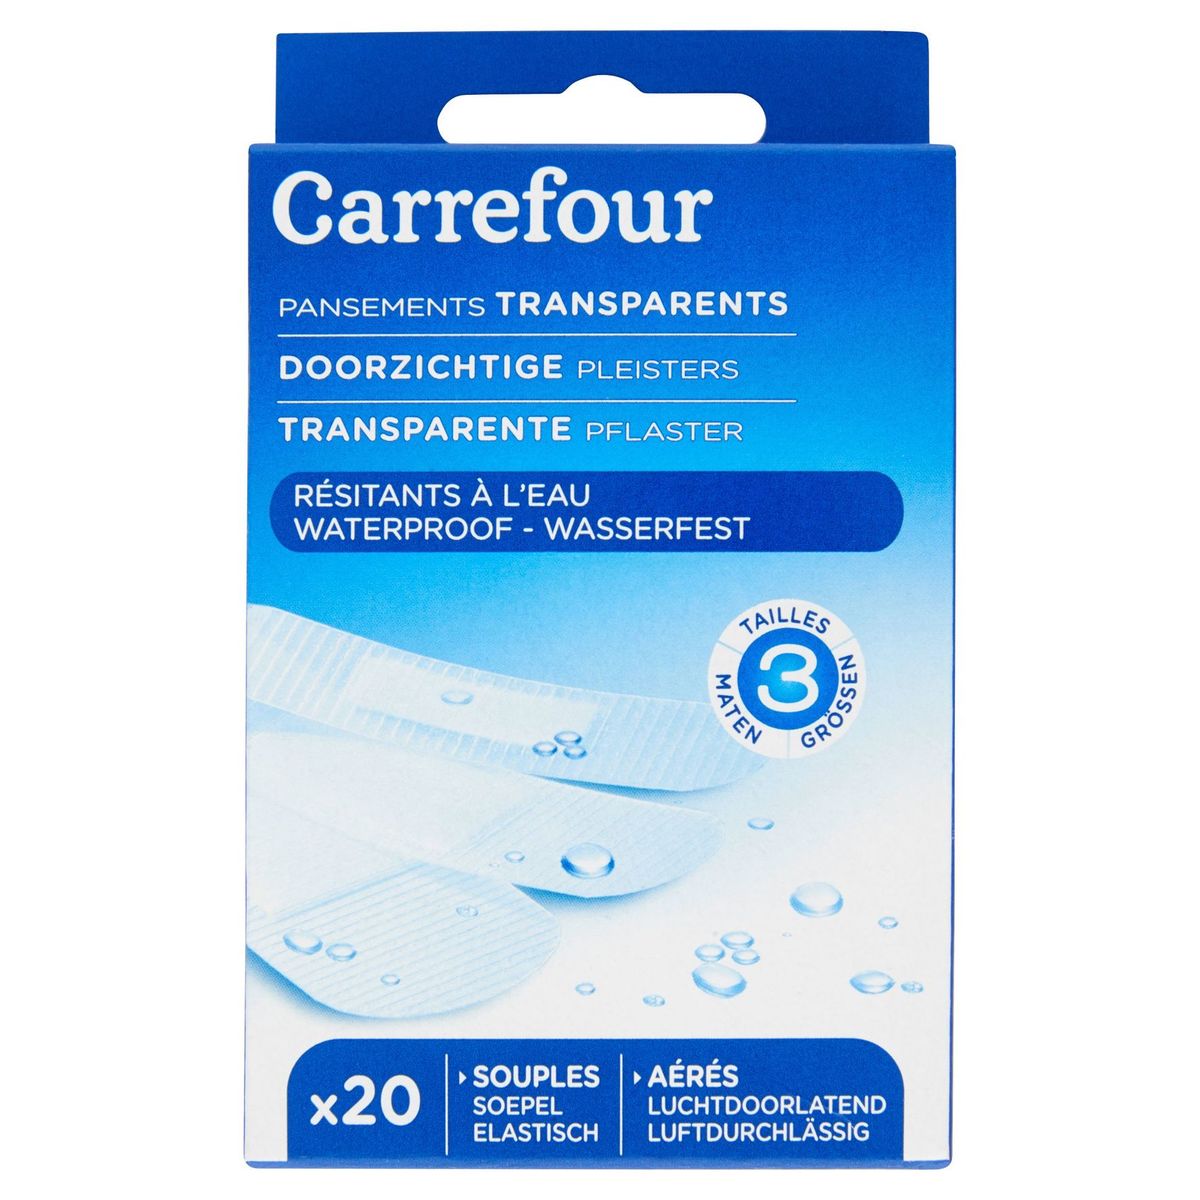 Carrefour Doorzichtige Pleisters Waterproof x 20